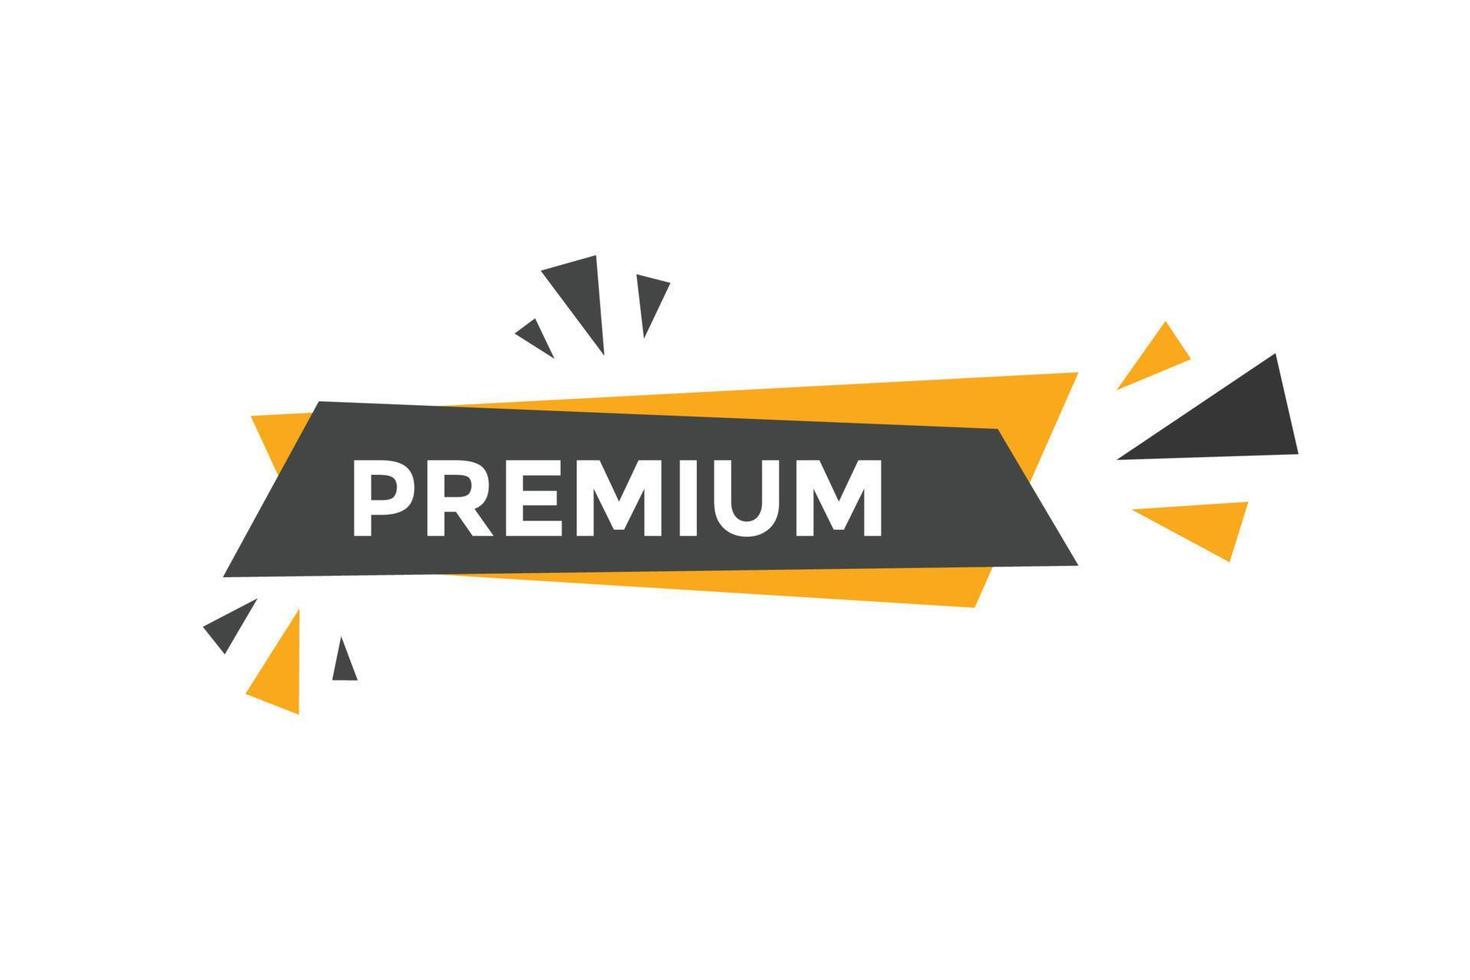 Premium-Schaltfläche. Sprechblase. Premium-buntes Web-Banner. Vektor-Illustration. Vorlage für Premium-Label-Schilder vektor